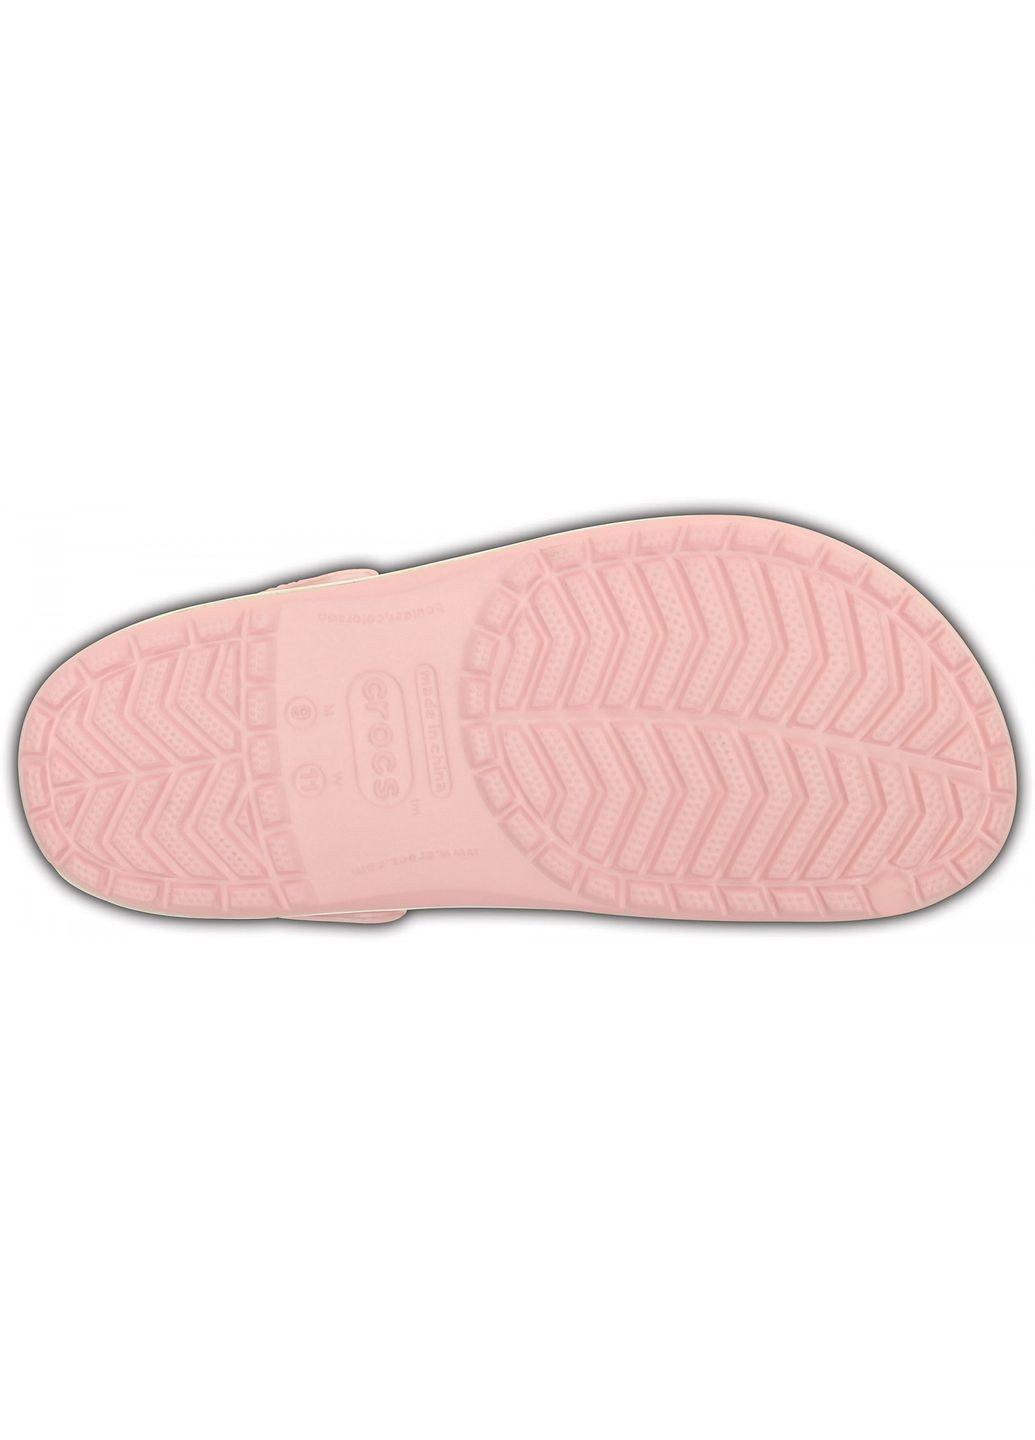 Розовые сабо crocband clog pearl pink m4w6-36-23 см 11016-w Crocs